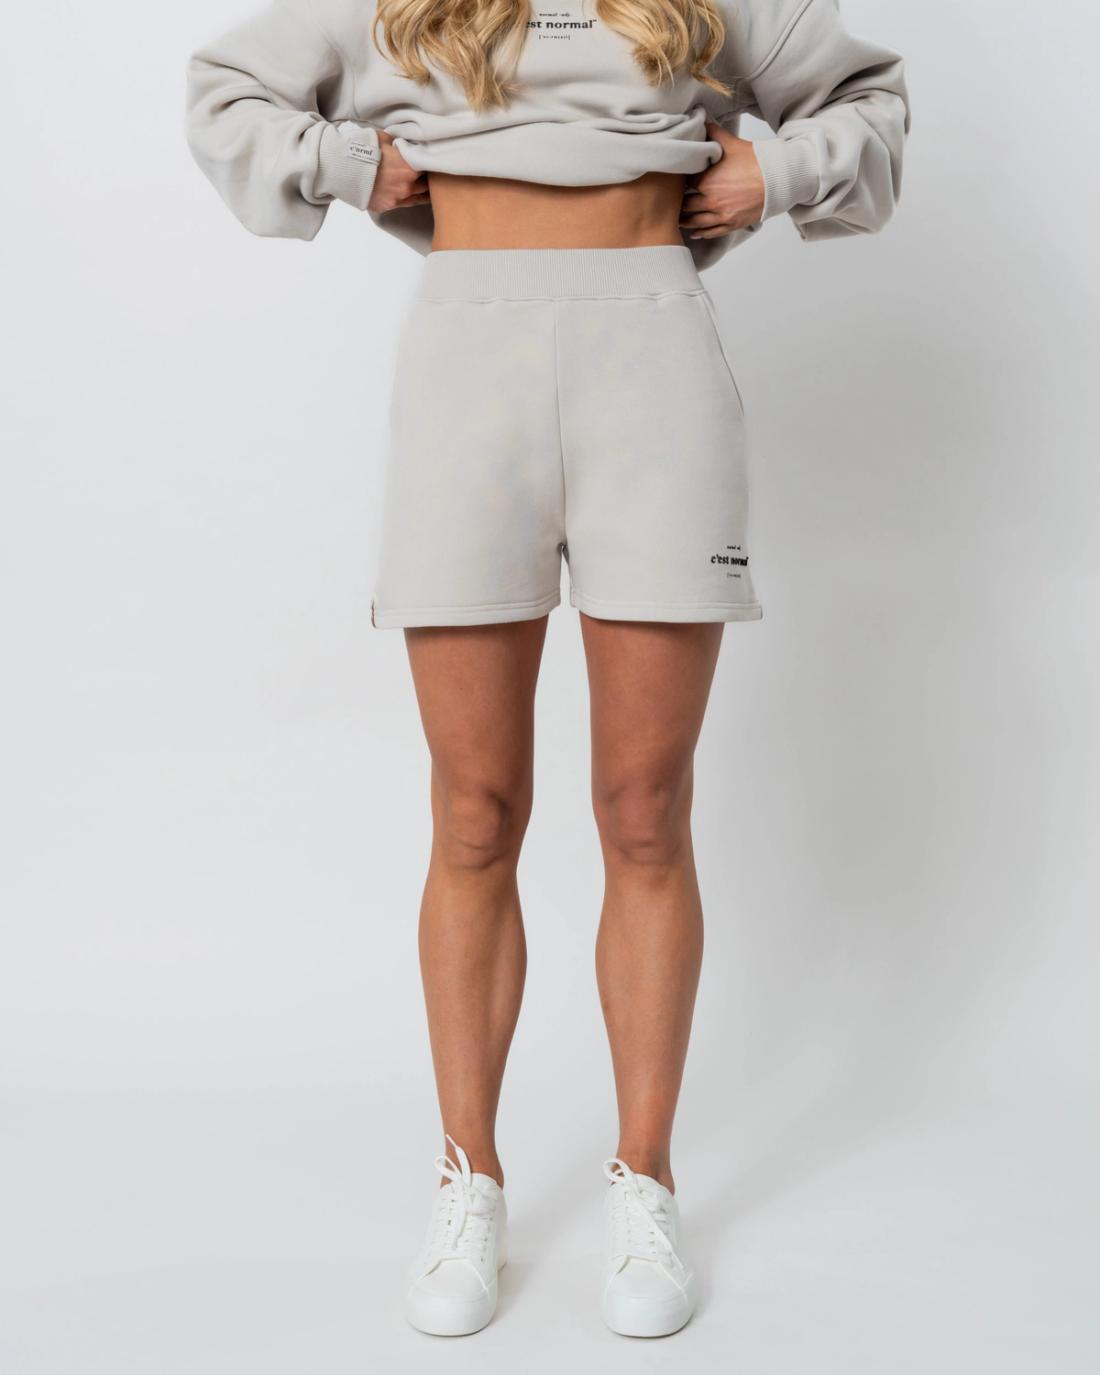 The Basic Shorts 2.0